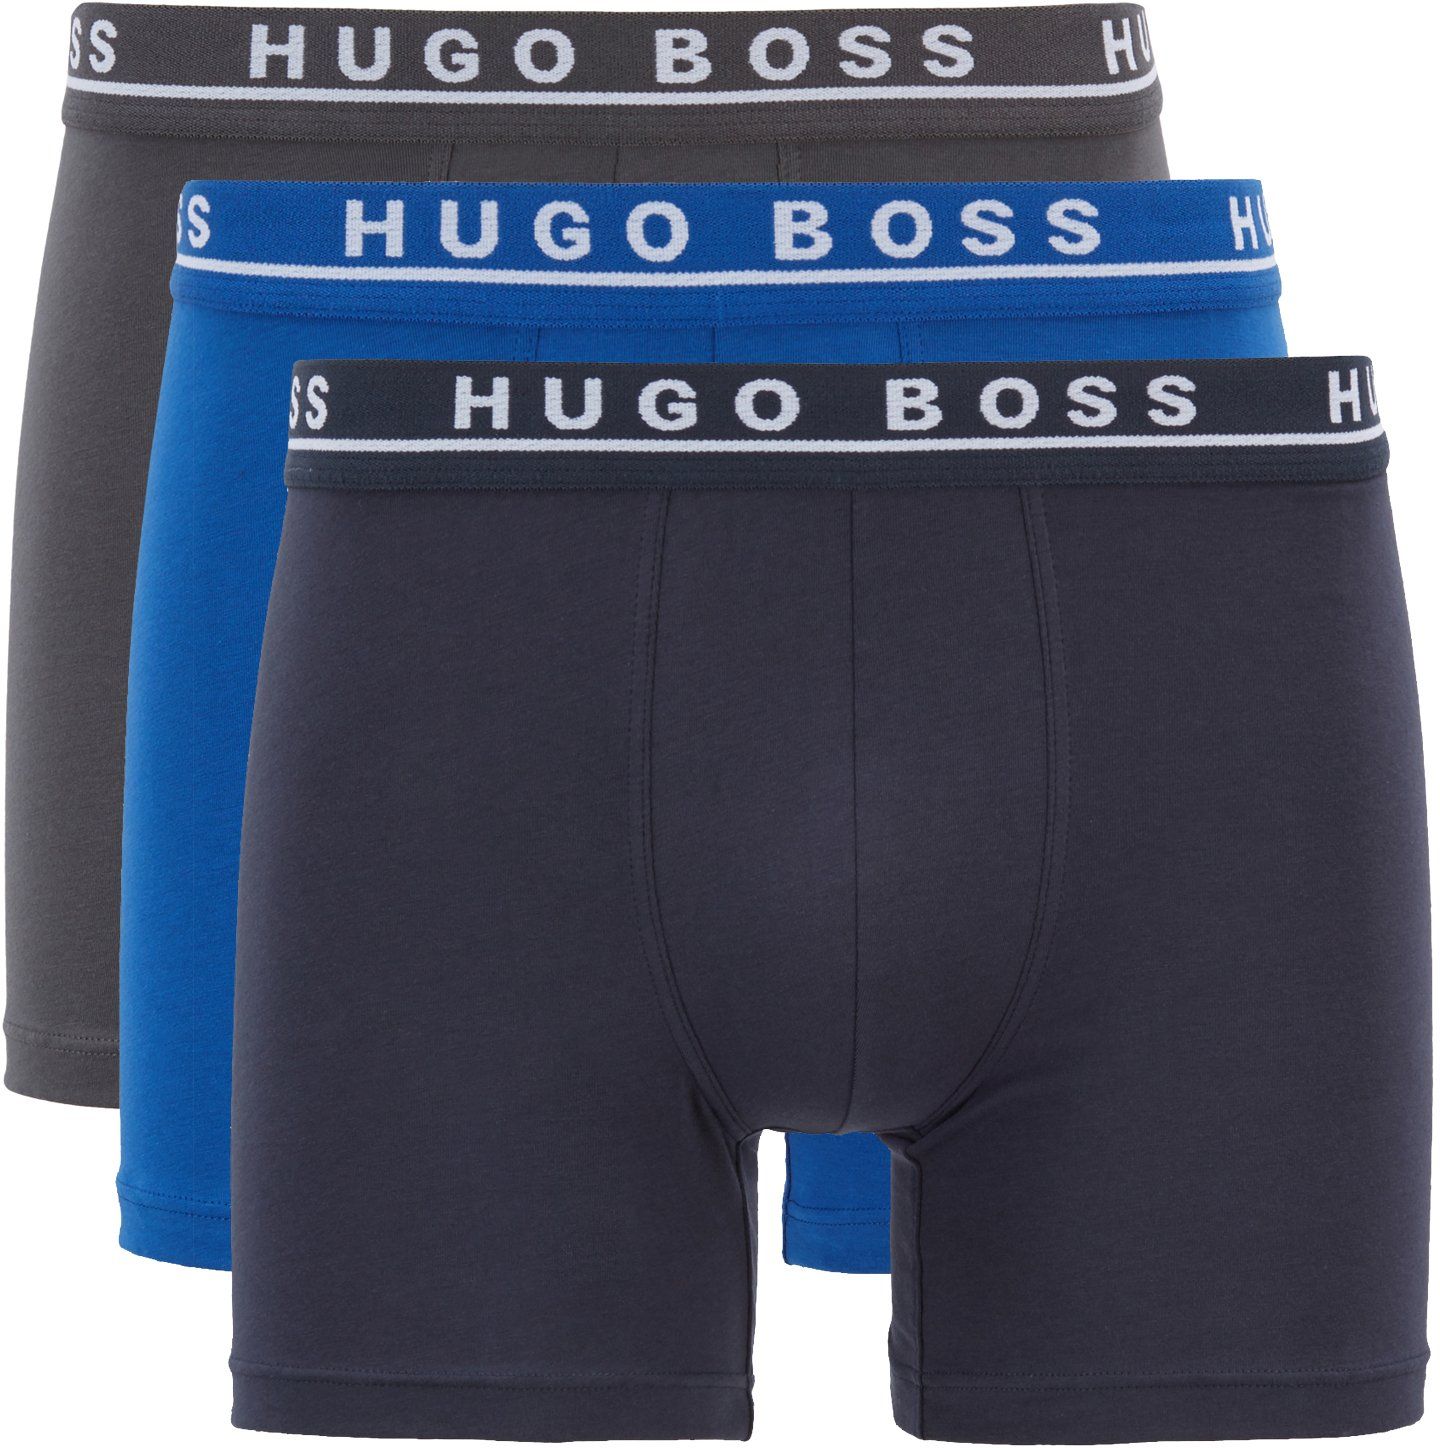 Hugo Boss Boxer Shorts Brief 3-Pack Open Blue Dark Blue Dark Grey size M